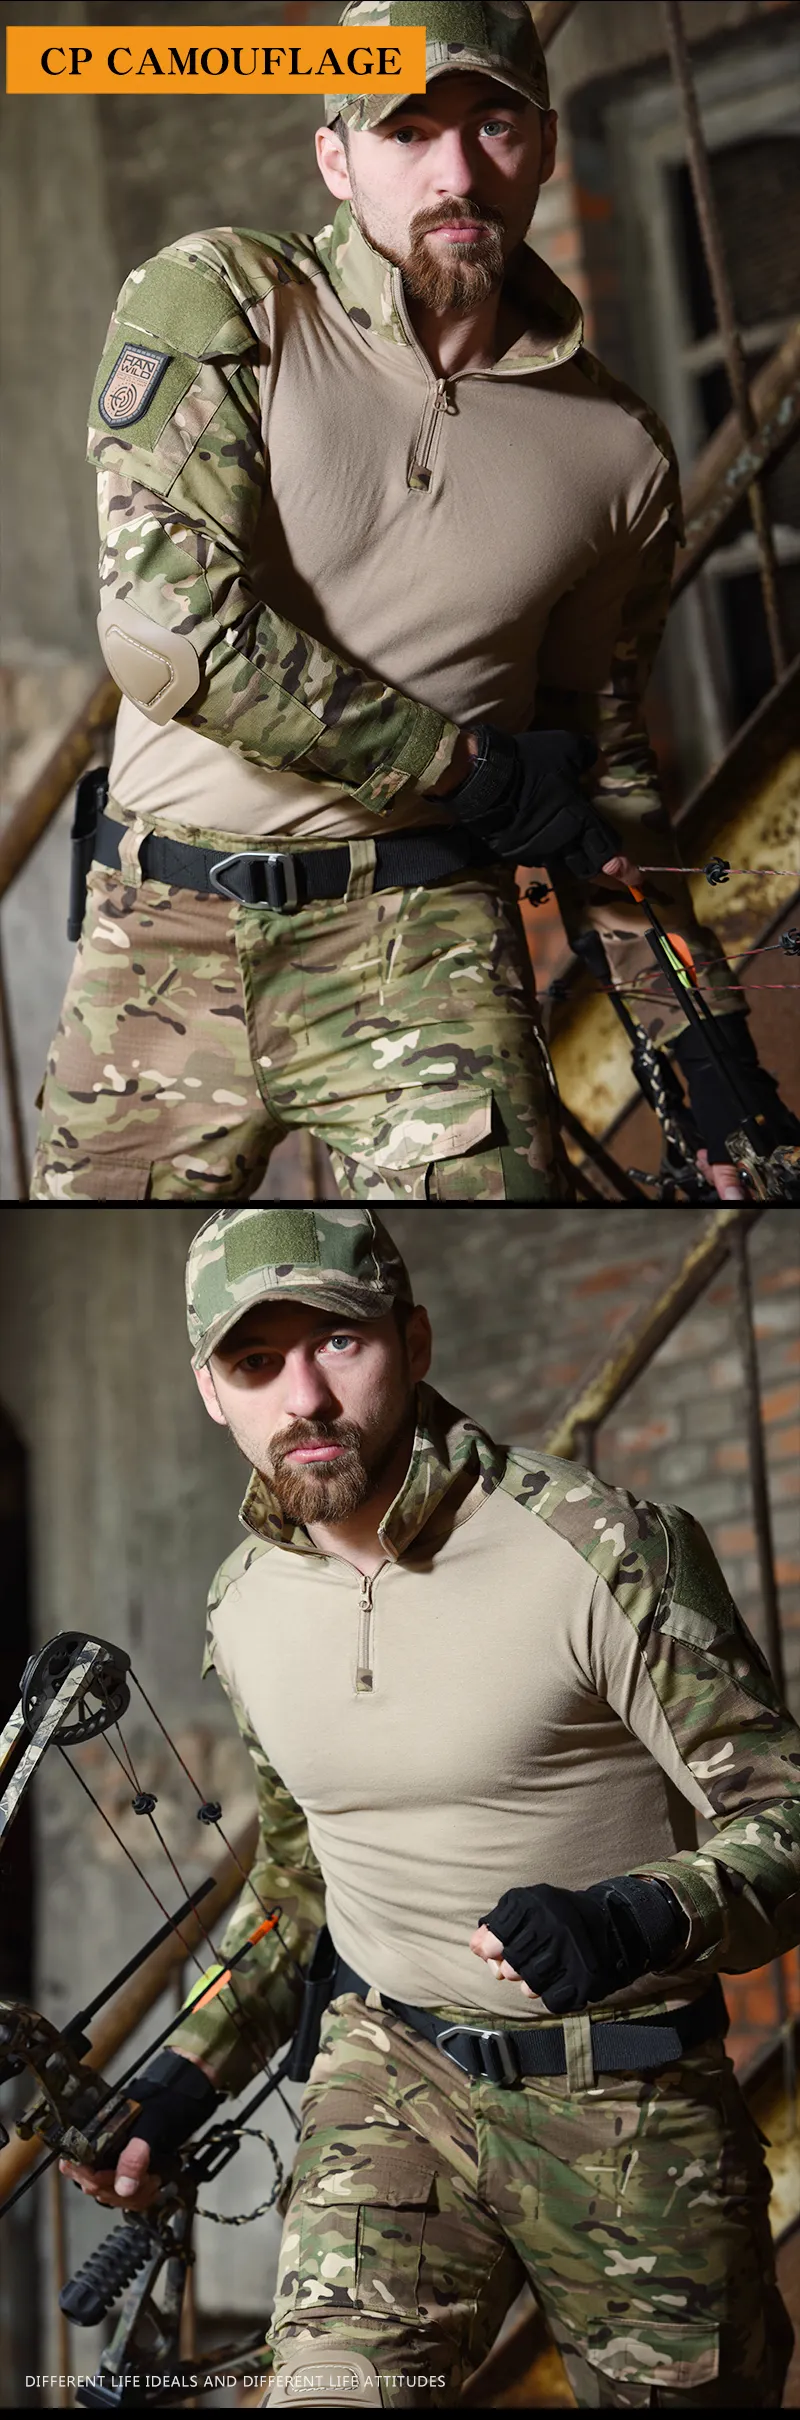 HAN WILD Men's Tactical Uniform Jacket And Pants Camouflage Combat Fast Assault Suit